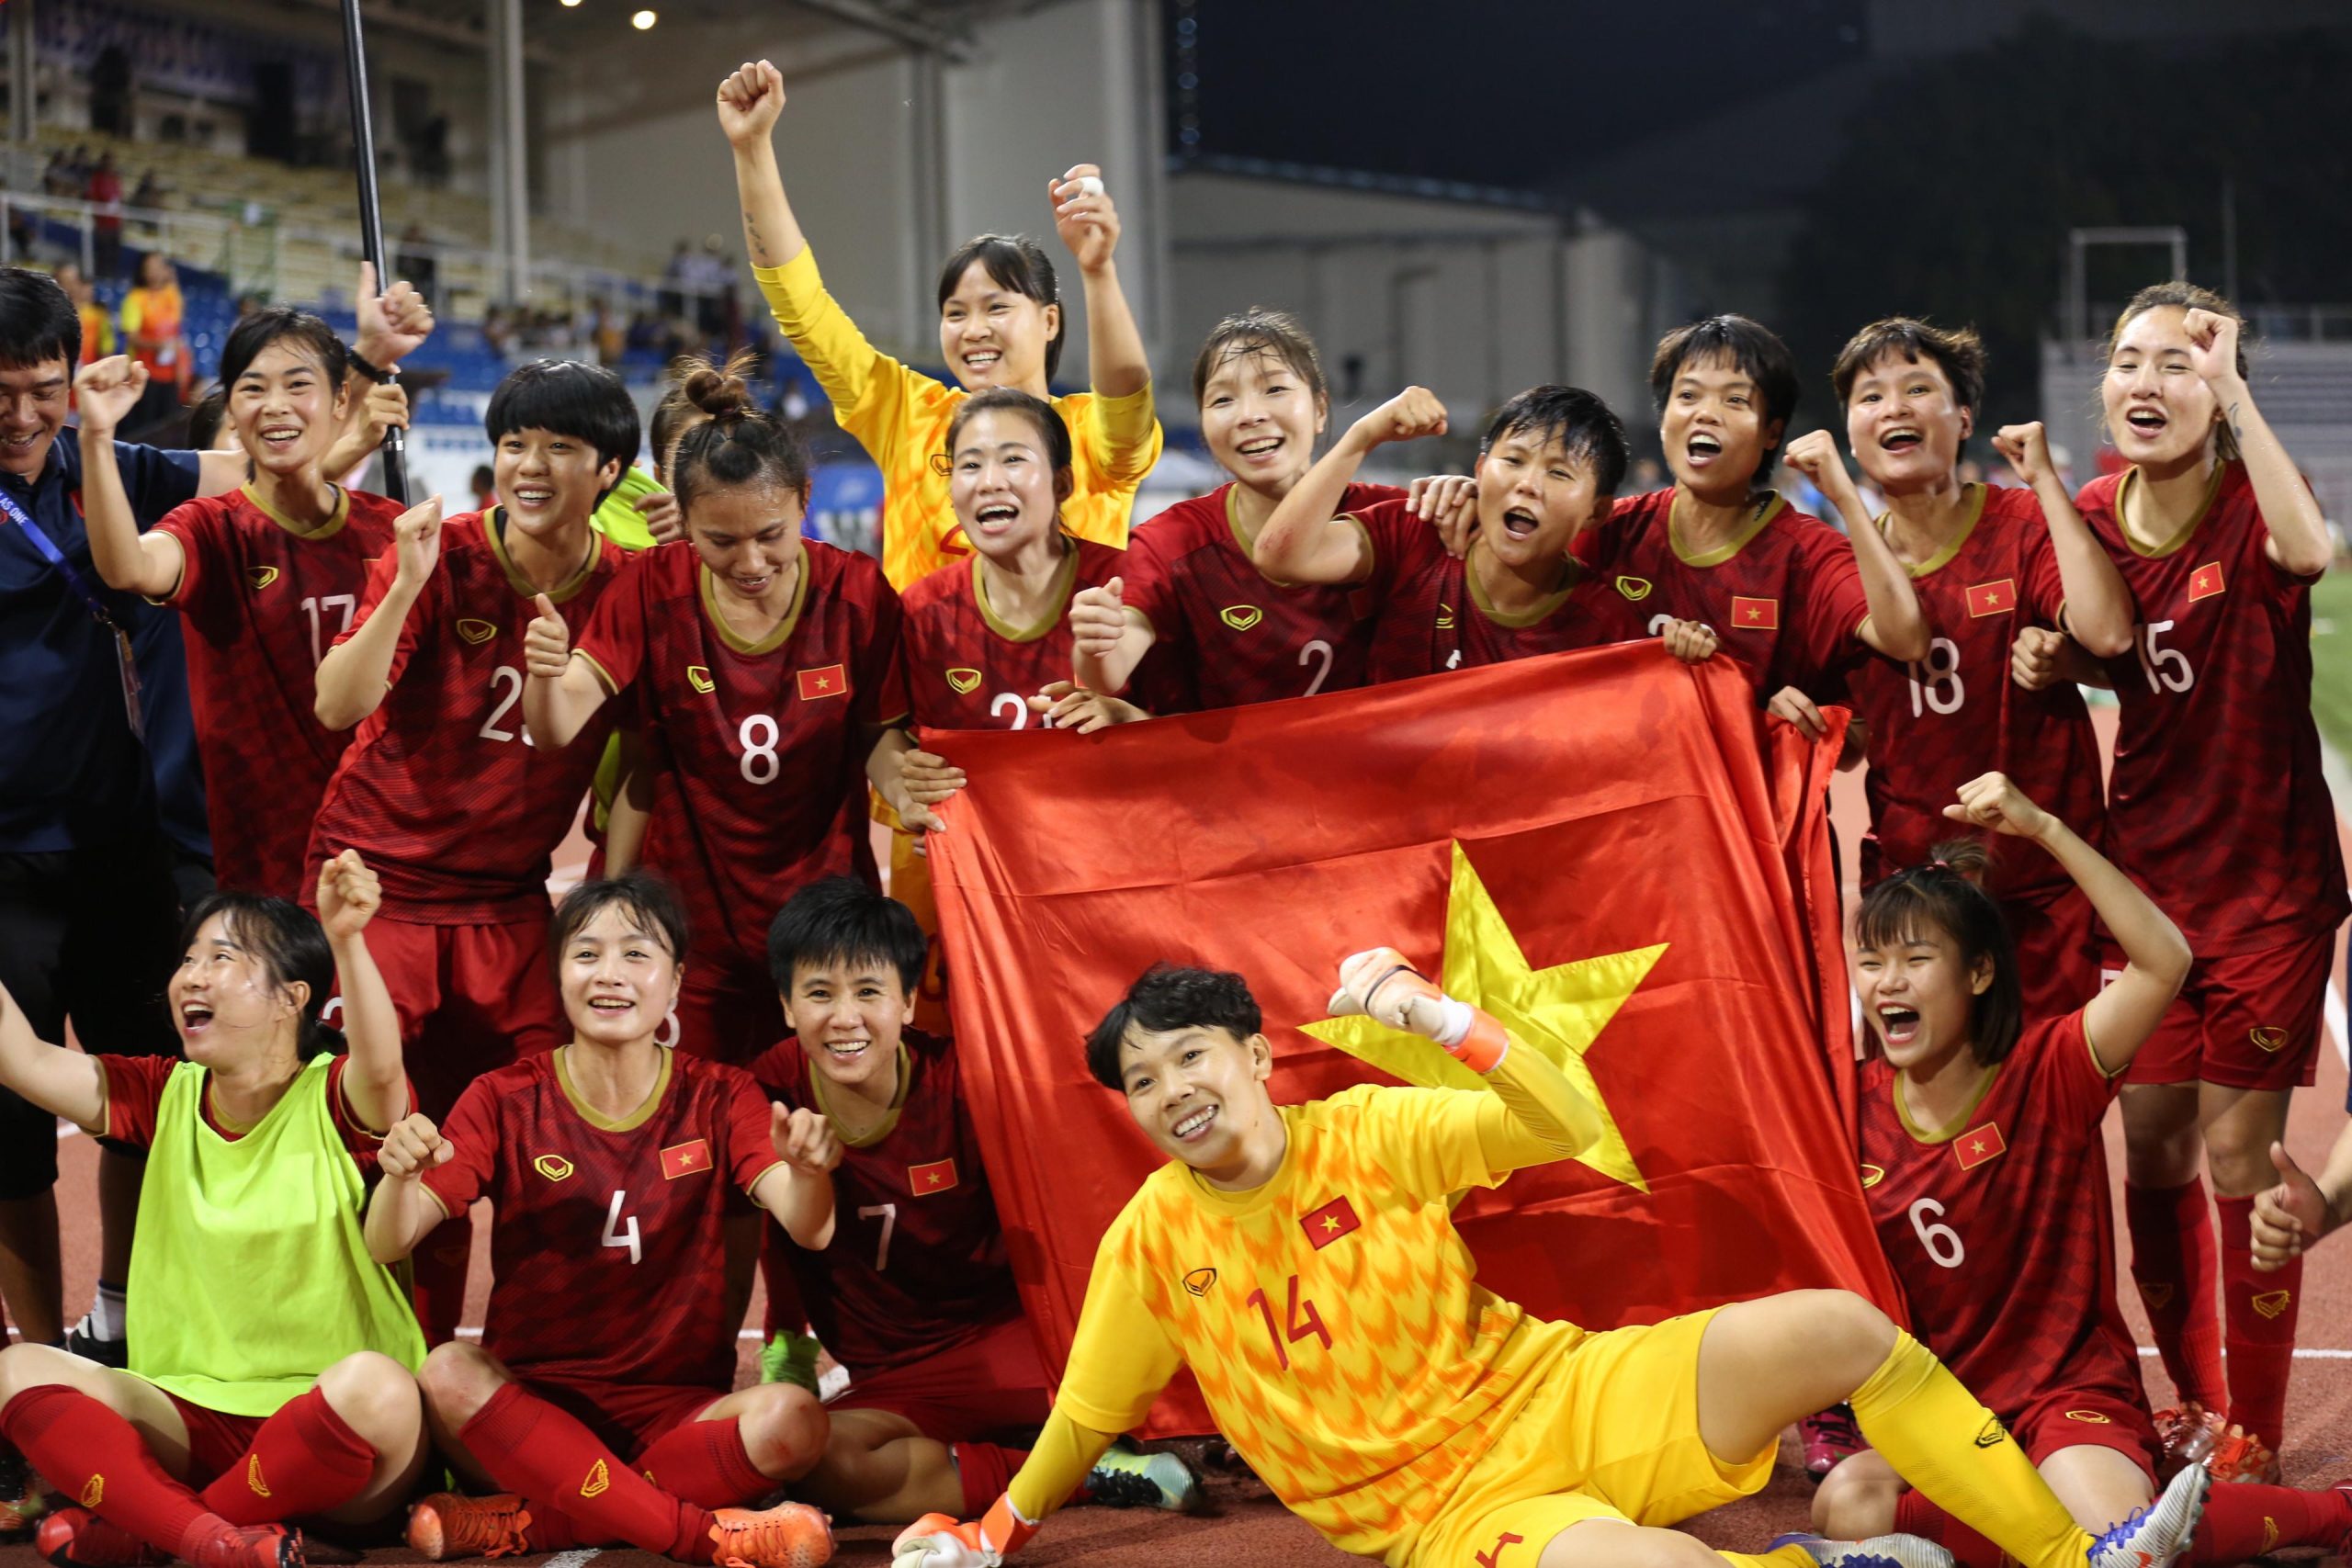 Bóng đá nữ Việt Nam đang nắm trong tay cơ hội tiến tới World Cup